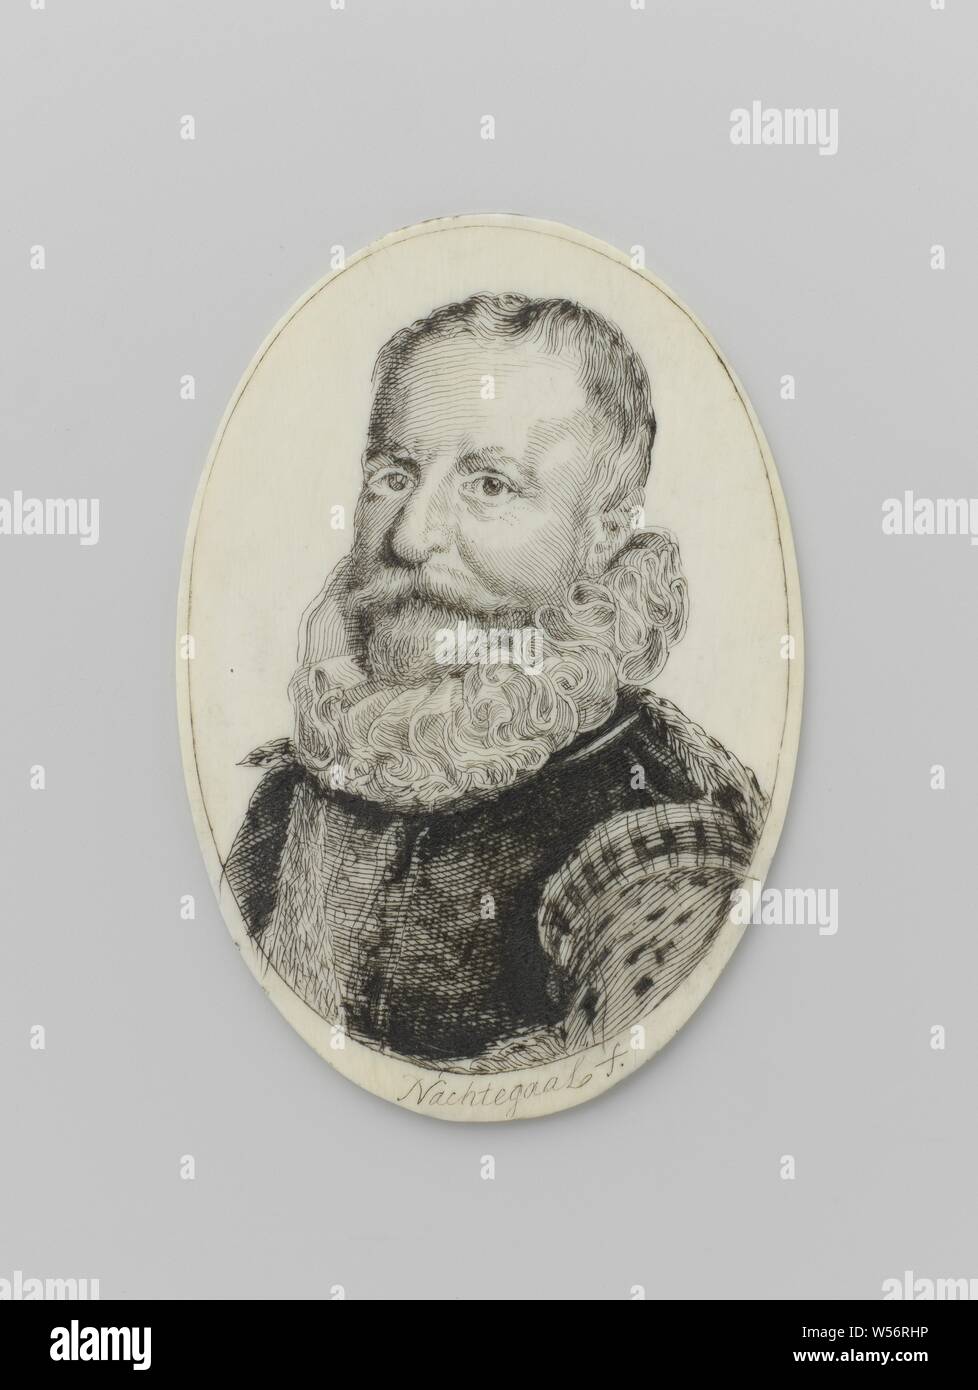 Ritratto in miniatura di Rombout Hoogerbeets, ovale ritratto in miniatura di un uomo (Rombout Hoogerbeets), busto, tre quarti a sinistra, guardando il visore, con ruff e jerkin scuro con leggera maniche e lembi di spallina, su sfondo bianco. Iscrizione retromarcia, Leiden, Rombout Hogerbeets, Clemens Nachtegaal, Olanda, 1600 - 1699, avorio, inchiostro e penna, h 7.7 cm × W 5.3 cm Foto Stock